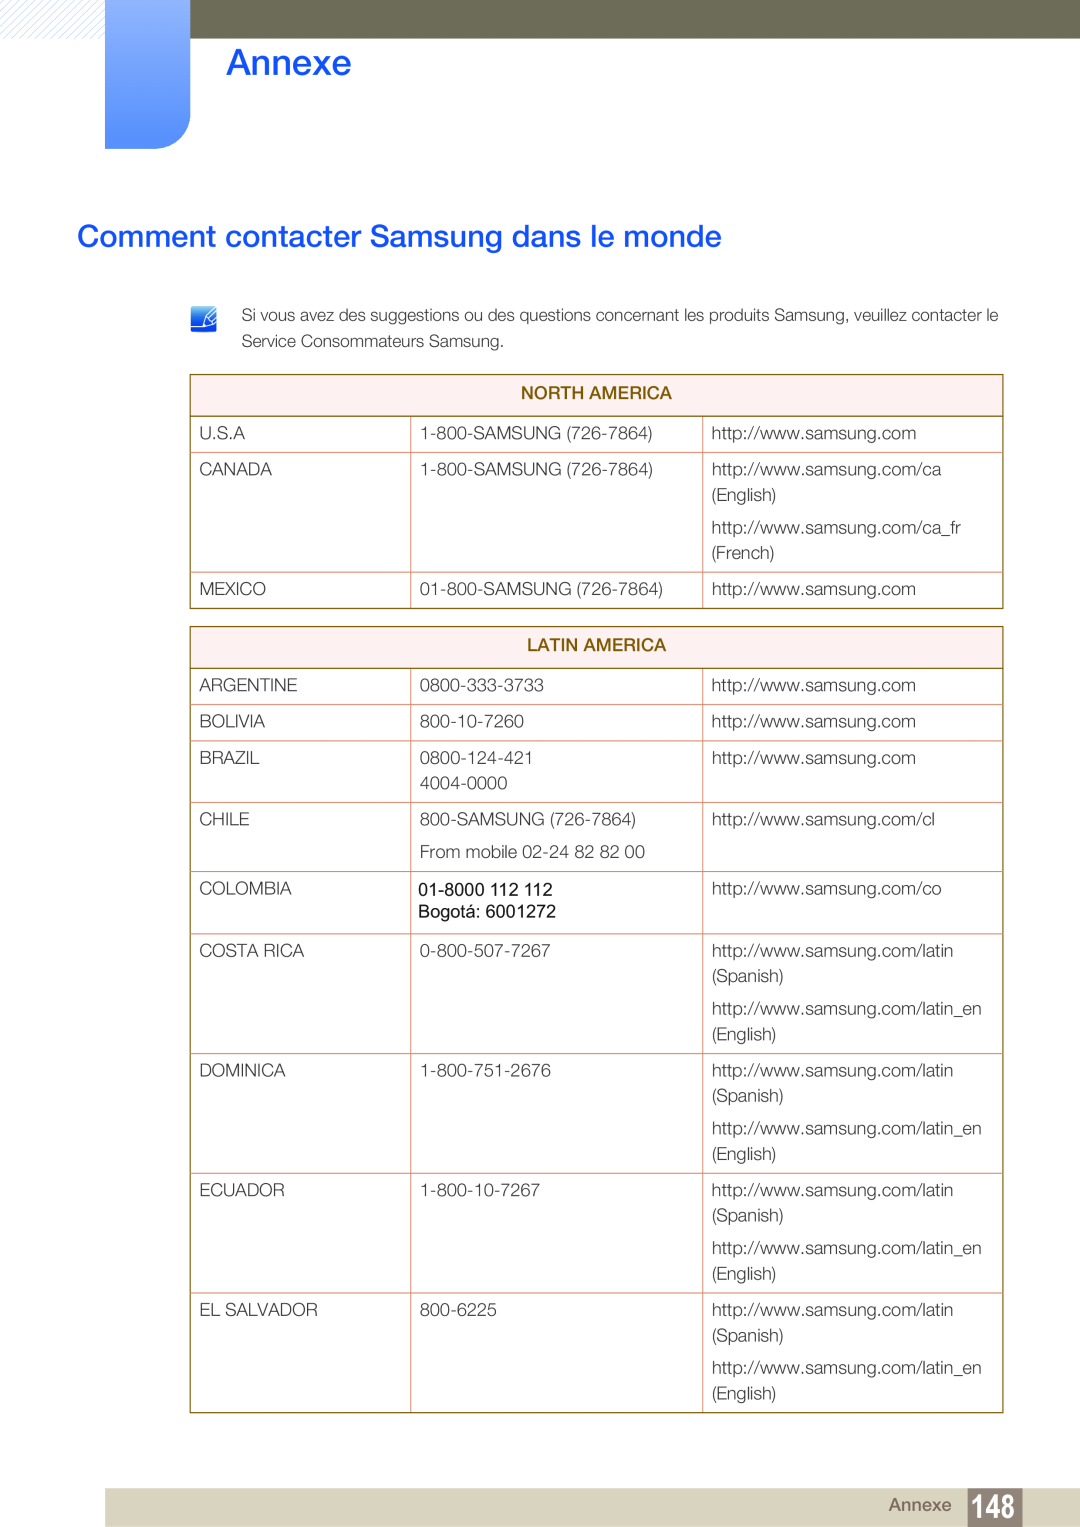 Samsung LS27C350HS/EN, LS22C350HS/EN, LS24C350HS/EN, LS23C350HS/EN manual Annexe, Comment contacter Samsung dans le monde 